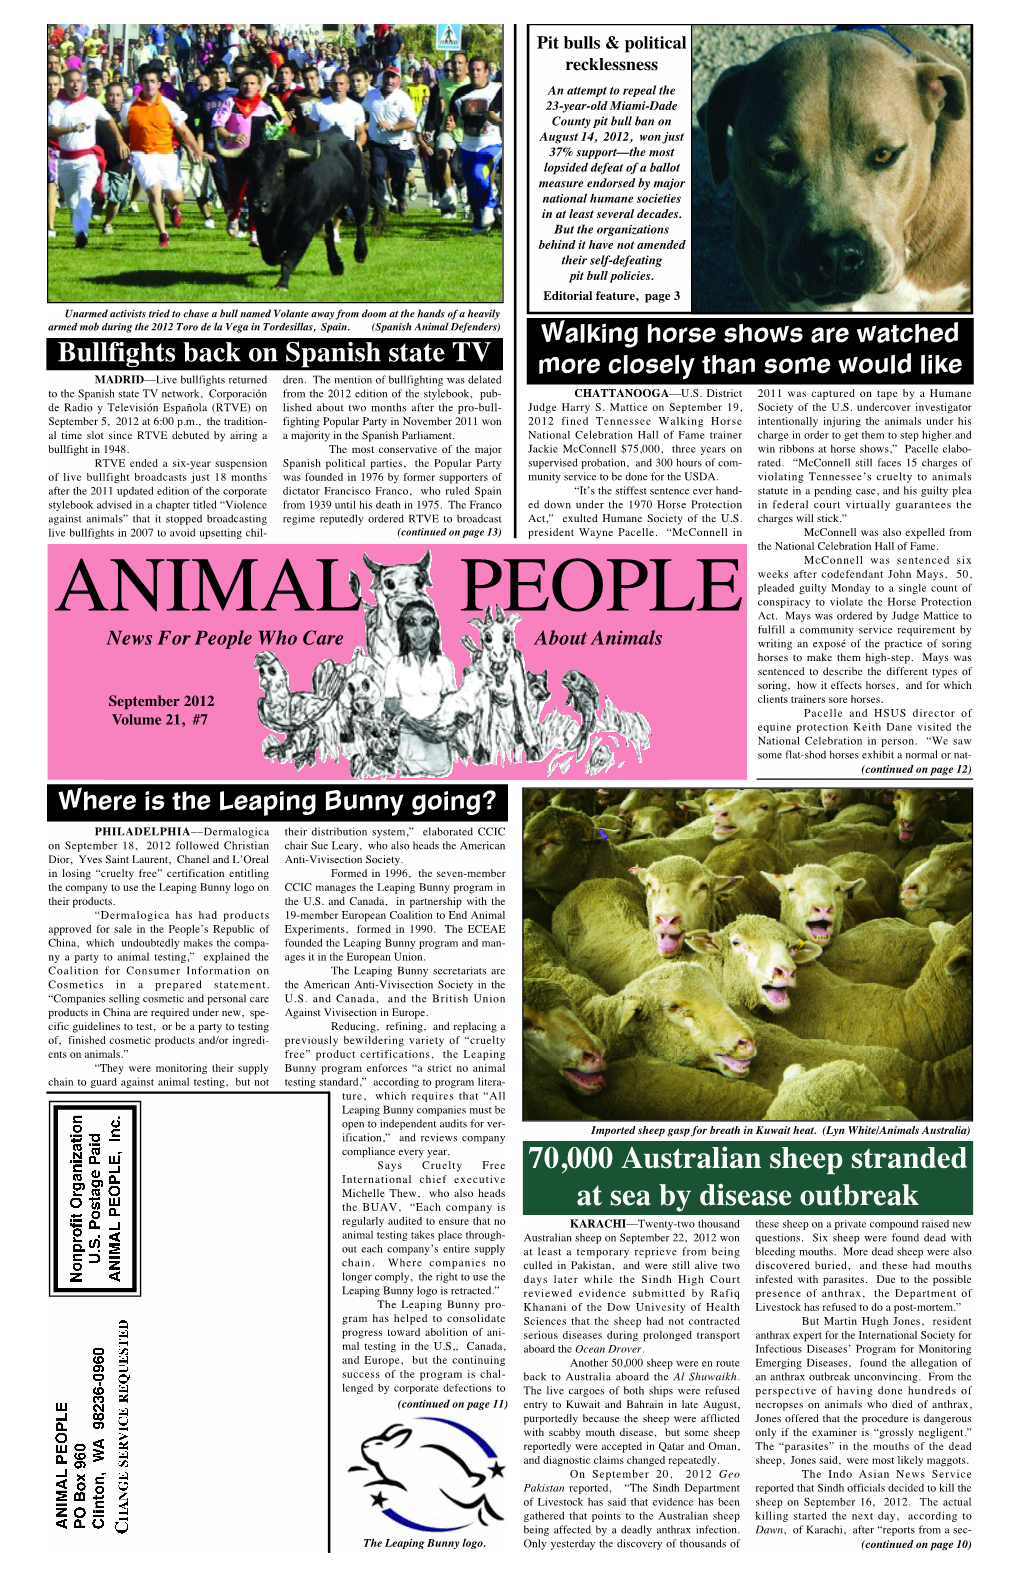 Animal People News